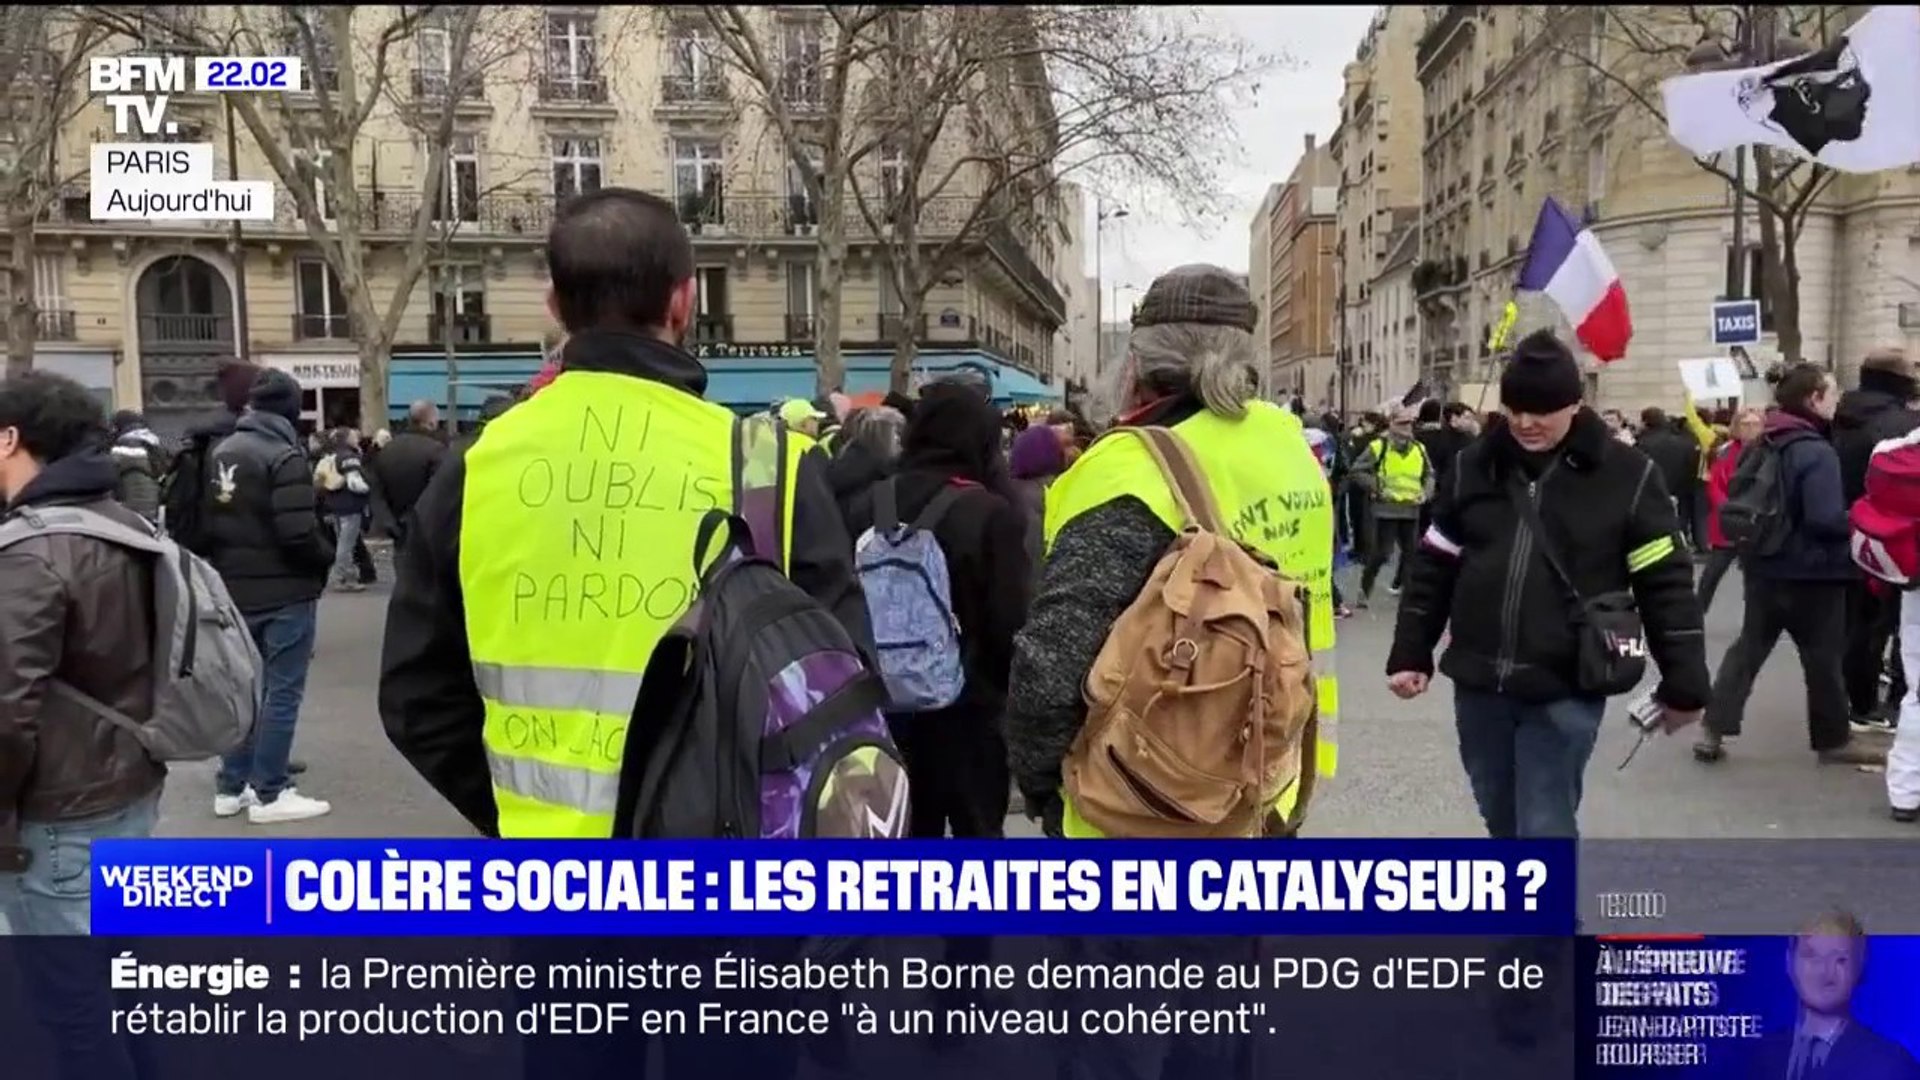 La manifestation des Gilets jaunes a été peu suivie à Paris, mais les  syndicats et la gauche appellent à de nouvelles mobilisations - Vidéo  Dailymotion